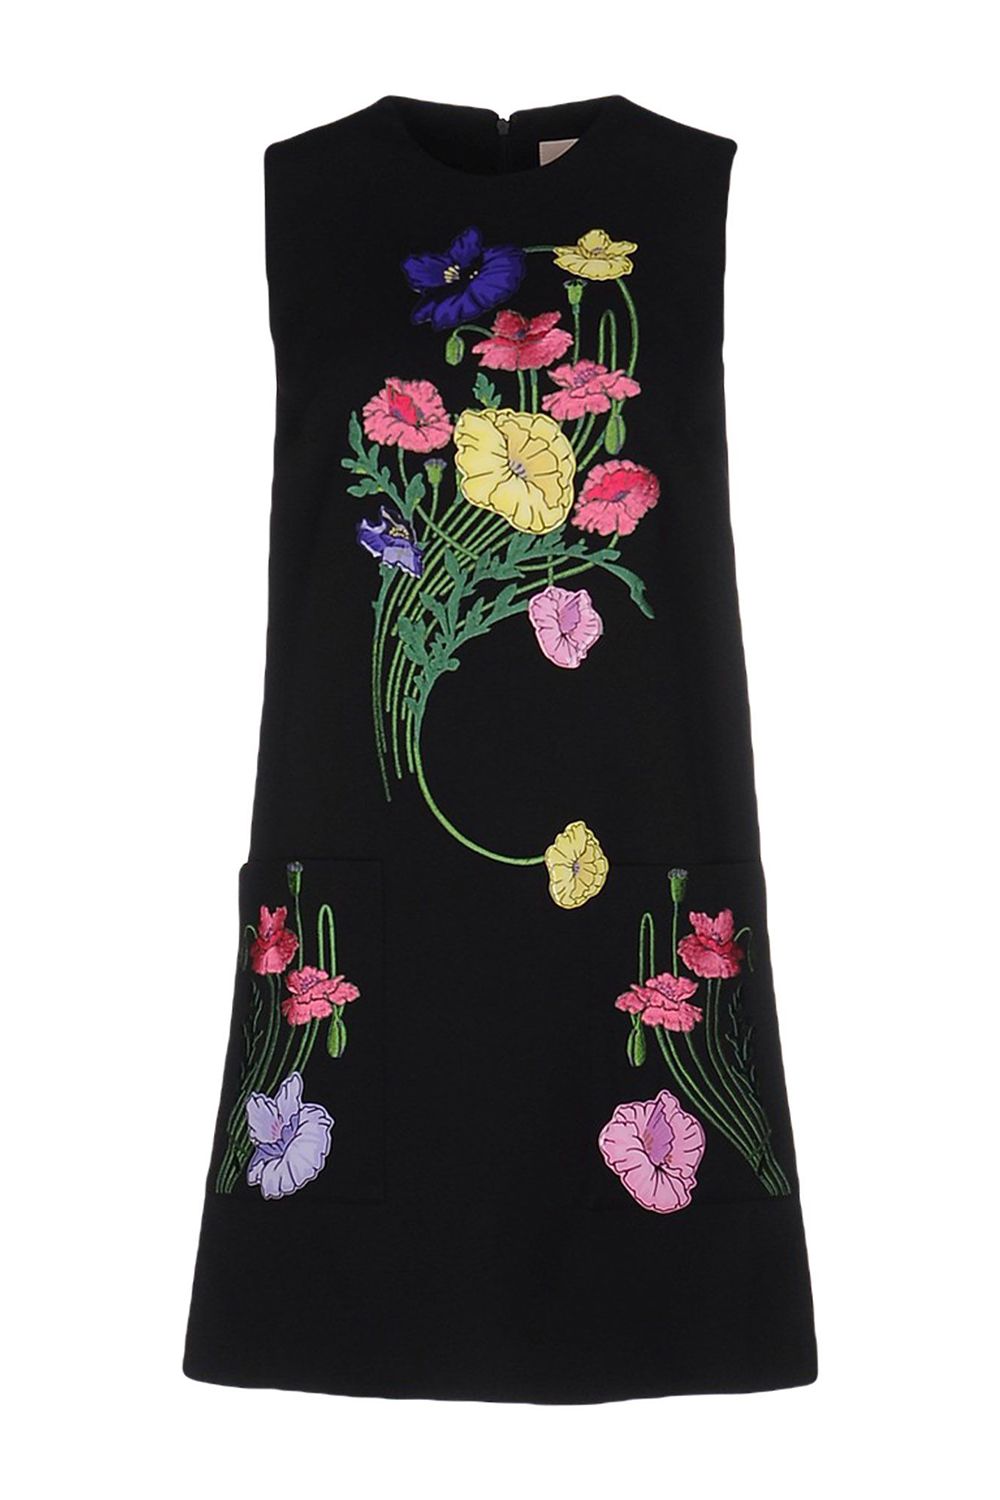 Christopher Kane Floral Dress, $769